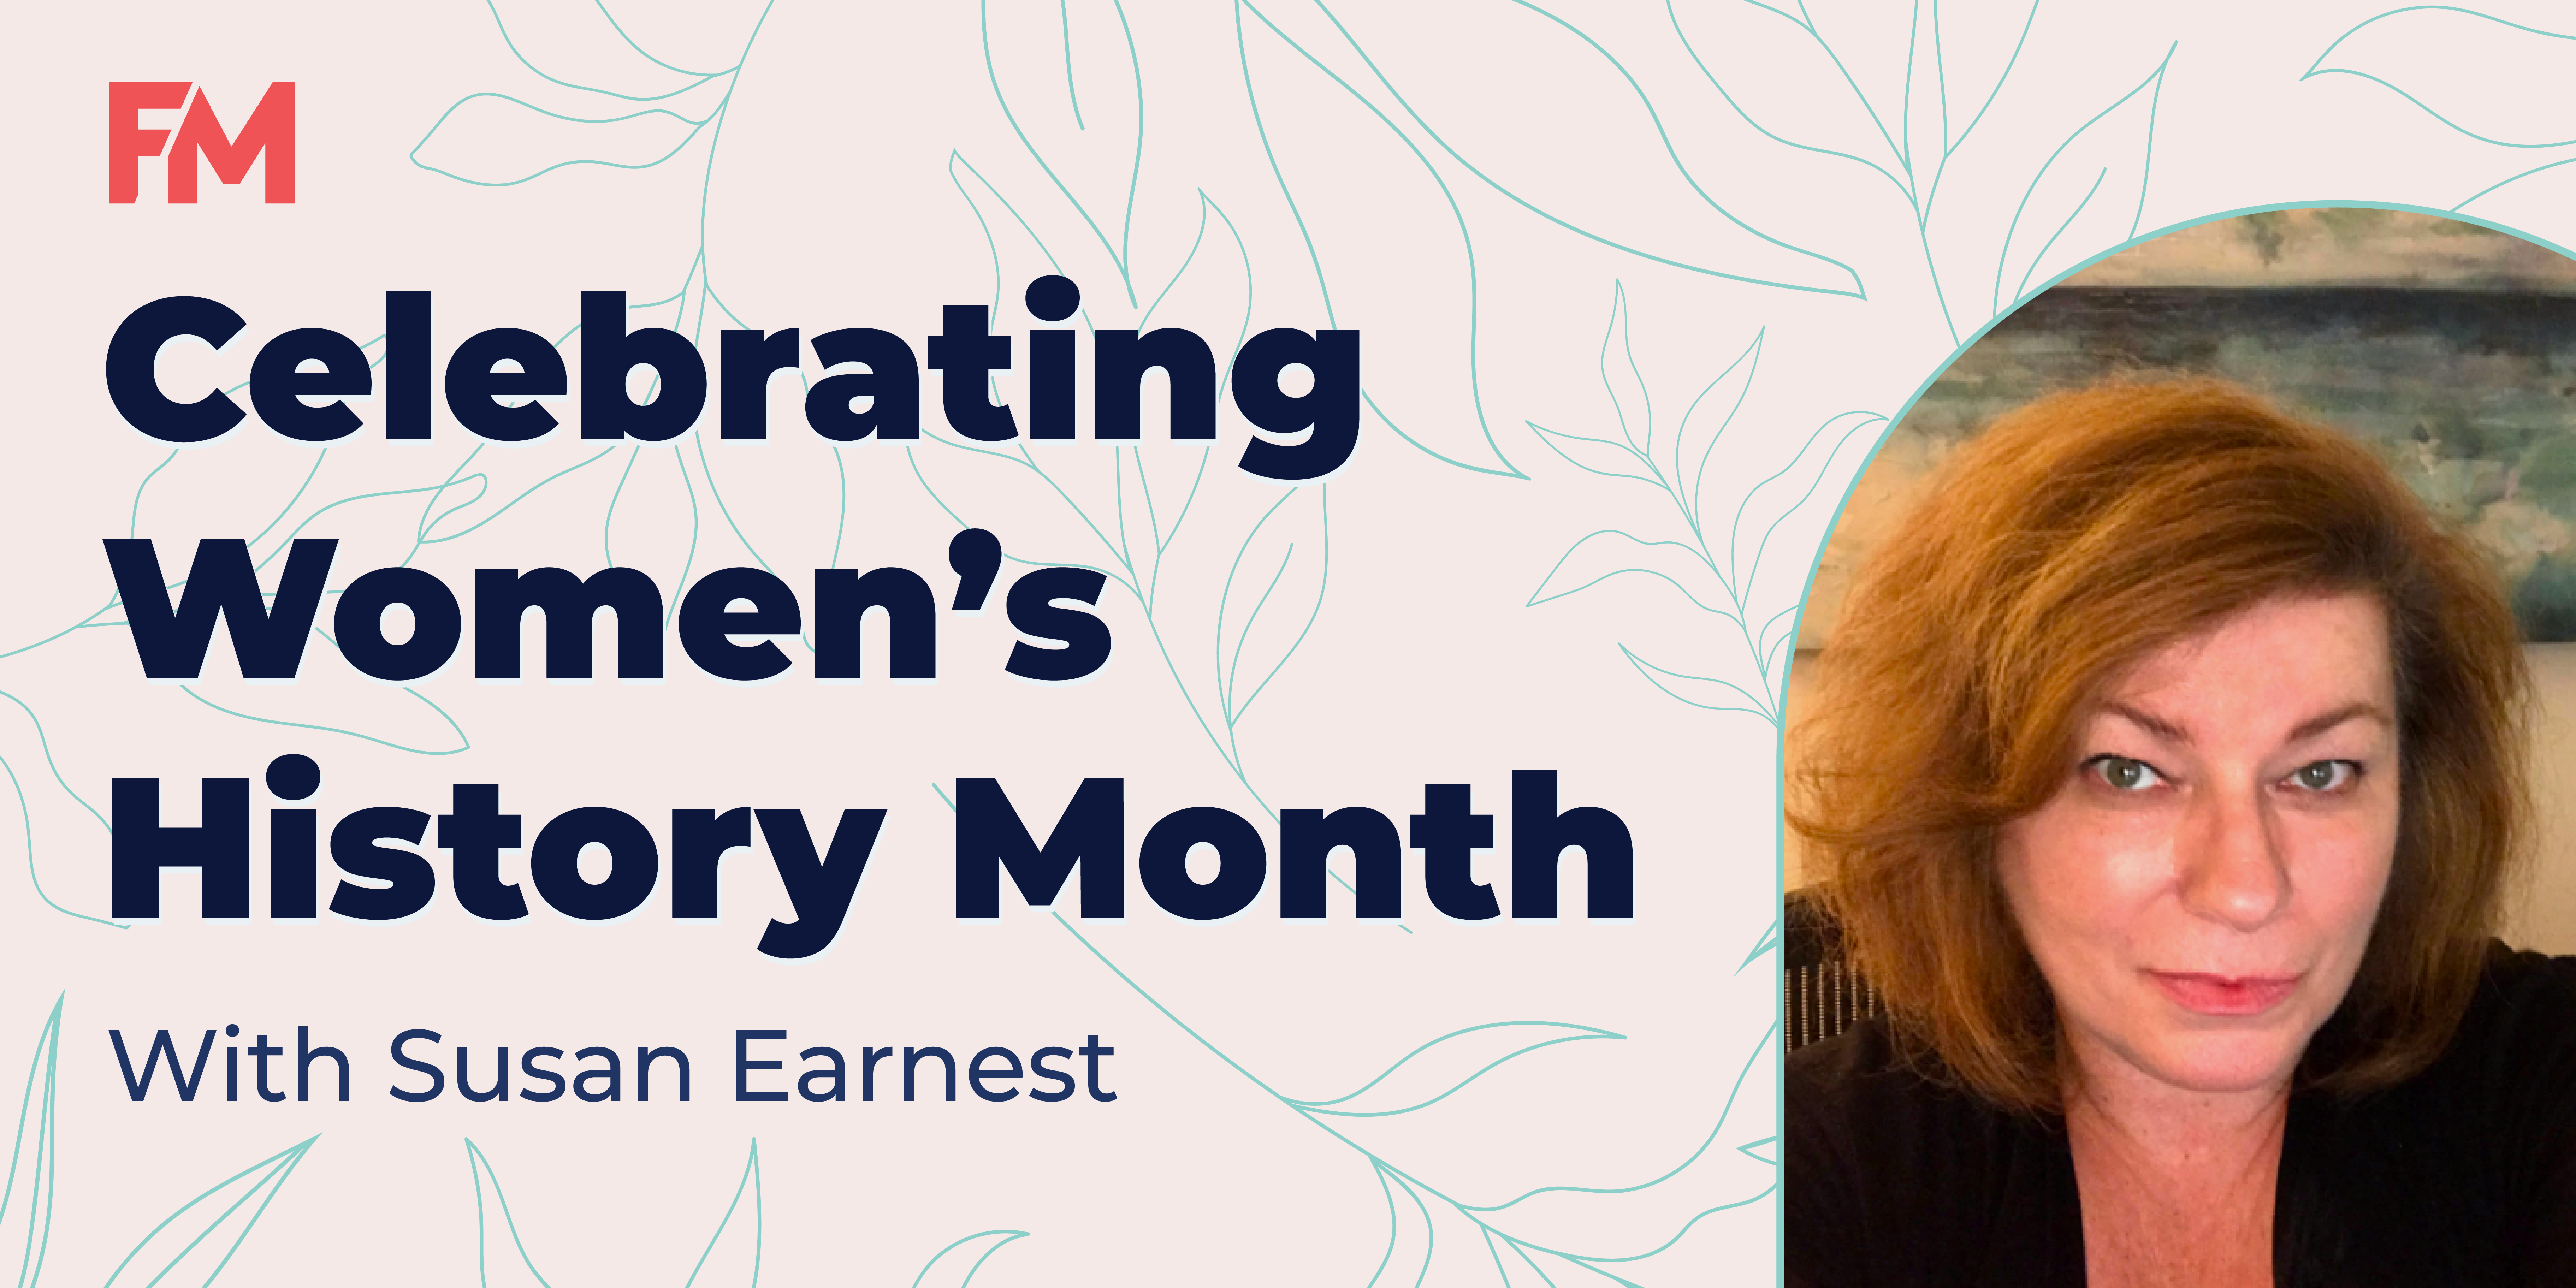 Women's History Month - Susan Earnest